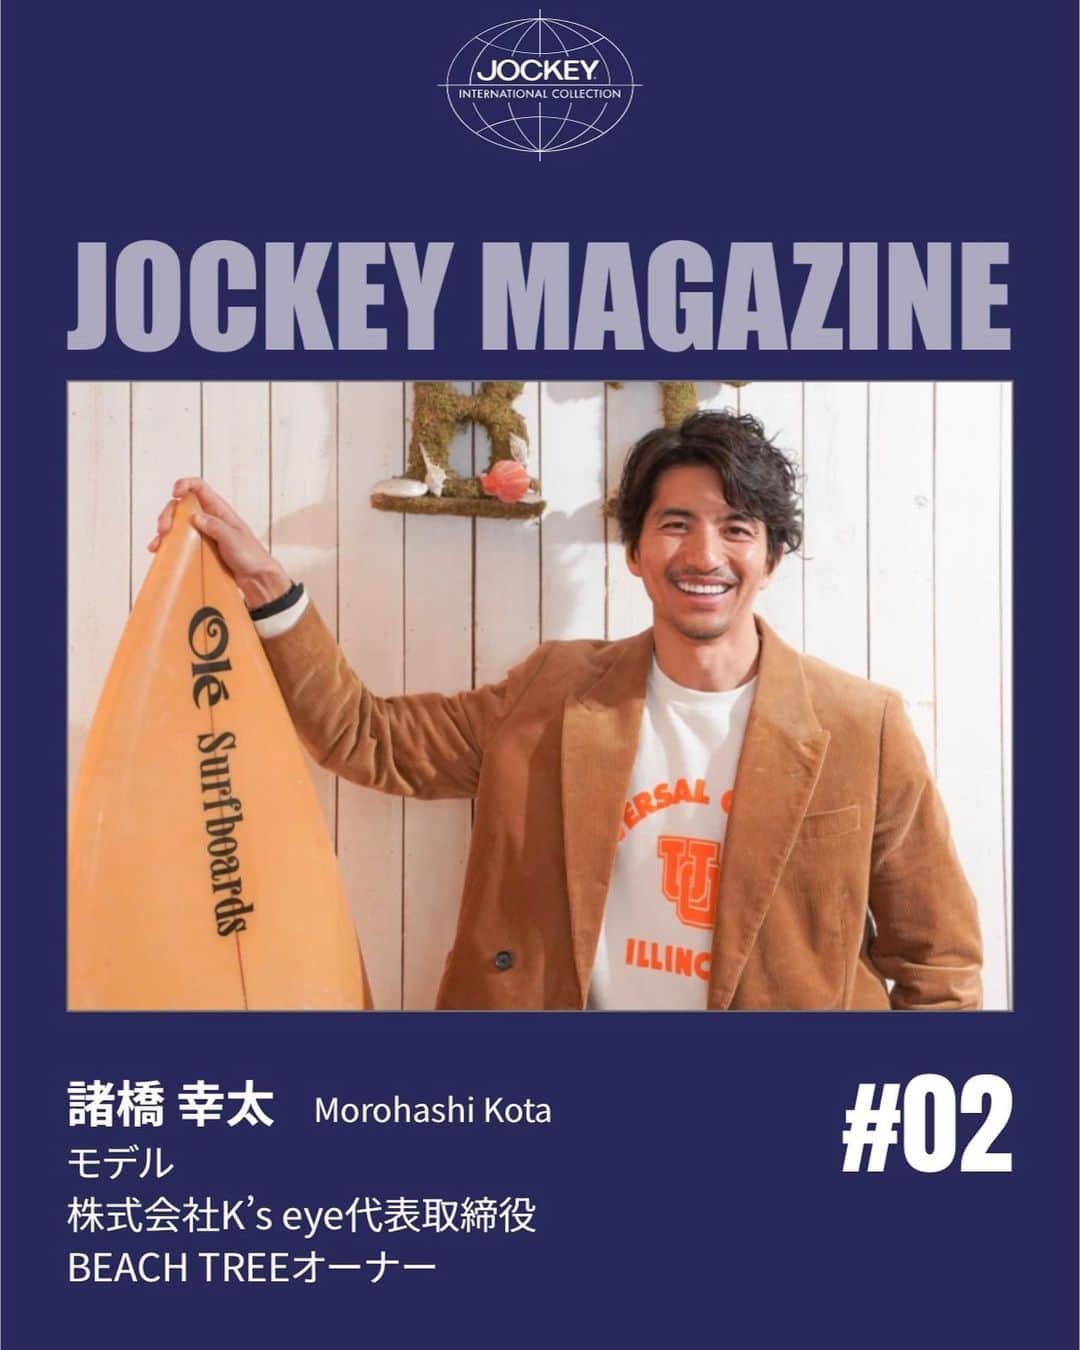 幸太のインスタグラム：「Interview for @jockey_japan mag  https://roynestore.jp/Page/jockey_premium_line/magazine02/  歴史あるアンダーウェアブランド @jockey  @jockey_japan のオーウンドメディア Jockey magazine にて 取材して頂きました🙏  モデルとして…  良かったとき、悪かったとき  サーファーとして…  そして経営者として…  僕の大切にしてる事など 色々とお話させて頂きました。  日本🇯🇵は、GW突入ですよね お時間ある時に読んでもらえたら嬉しいです😊  感想なども聞かせてください  Hv a good weekend !!   Special thanks @spinlab_inc   #jockey  #jockeyunderwear  #specialinterview  #ジョッキー  #アンダーウェア  #経営者」